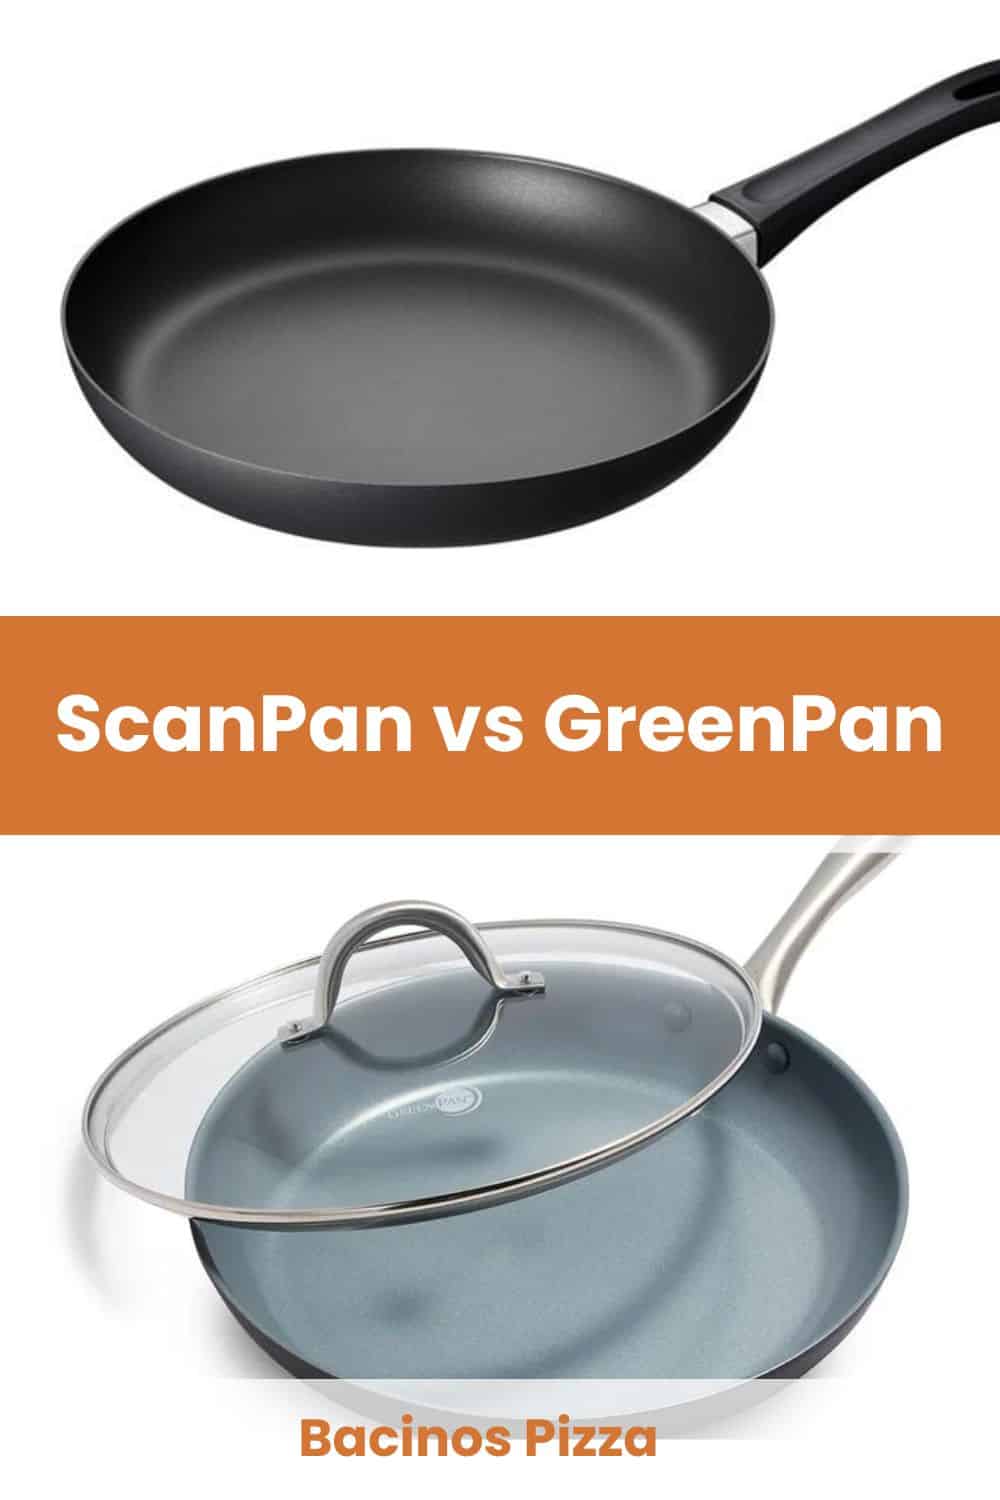 scanpan vs greenpan